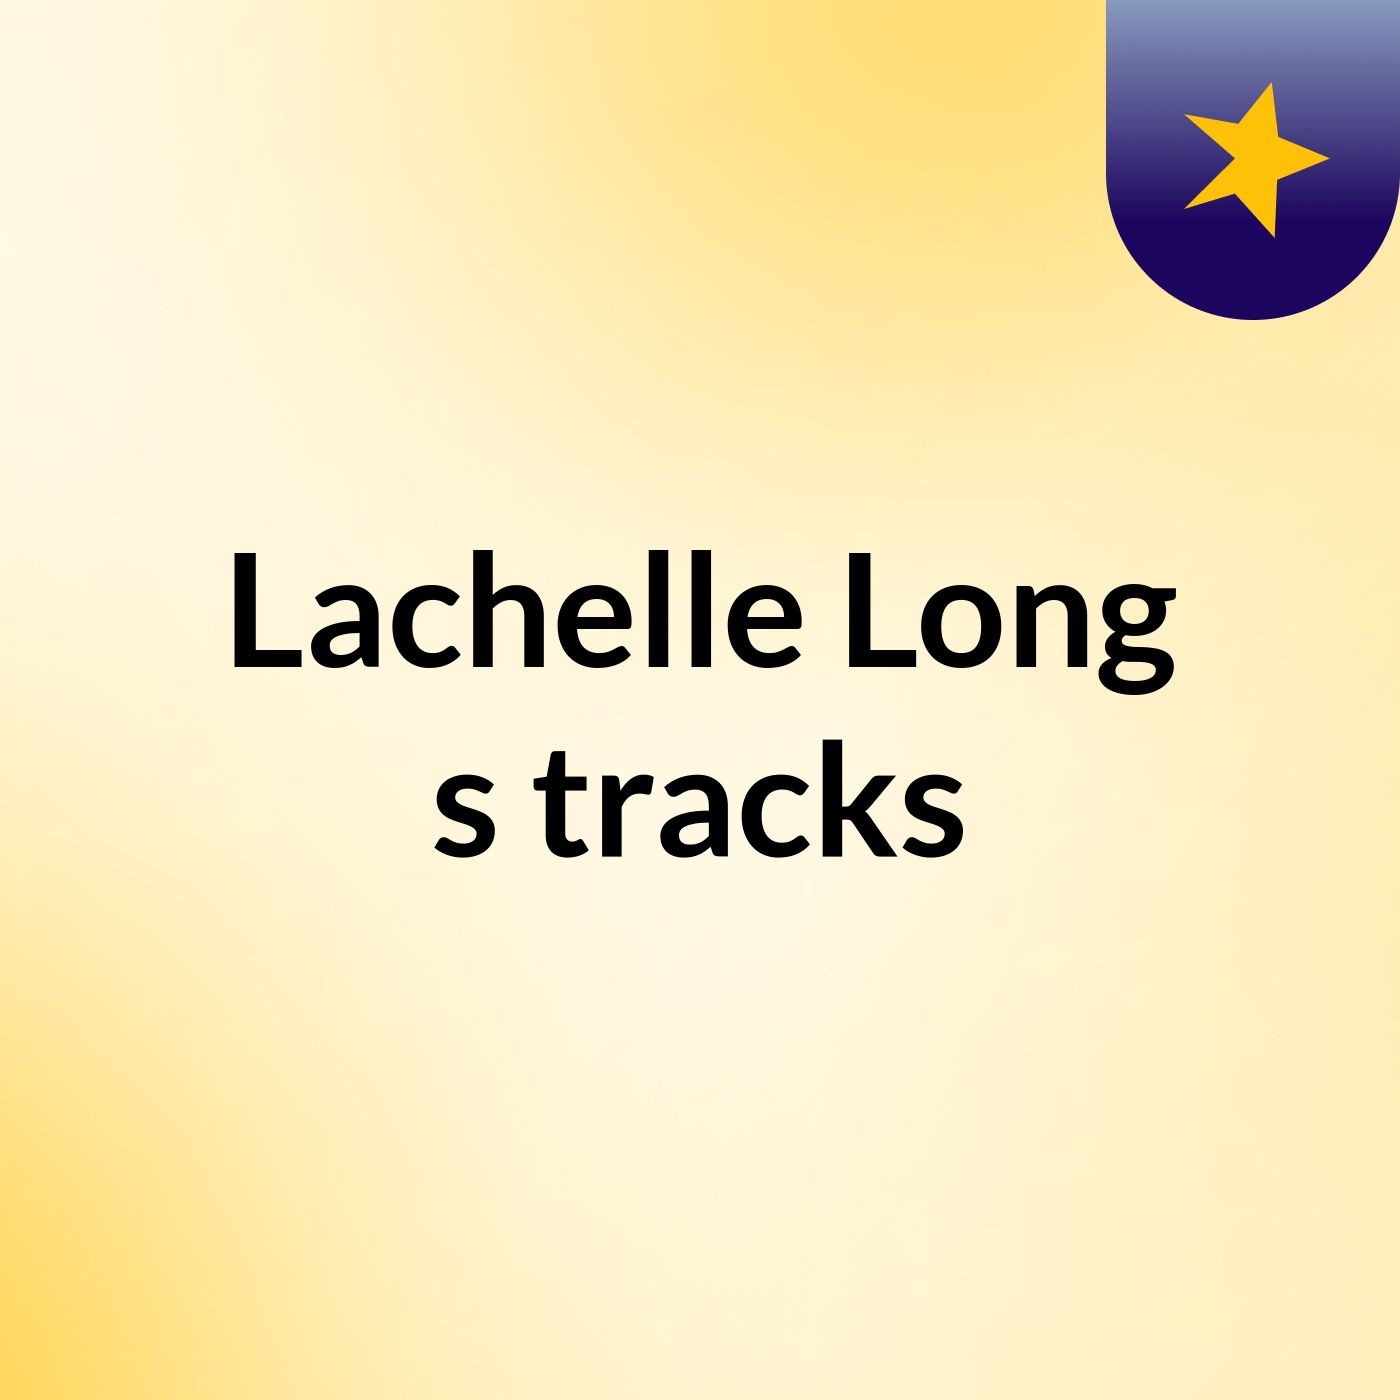 Lachelle Long's tracks